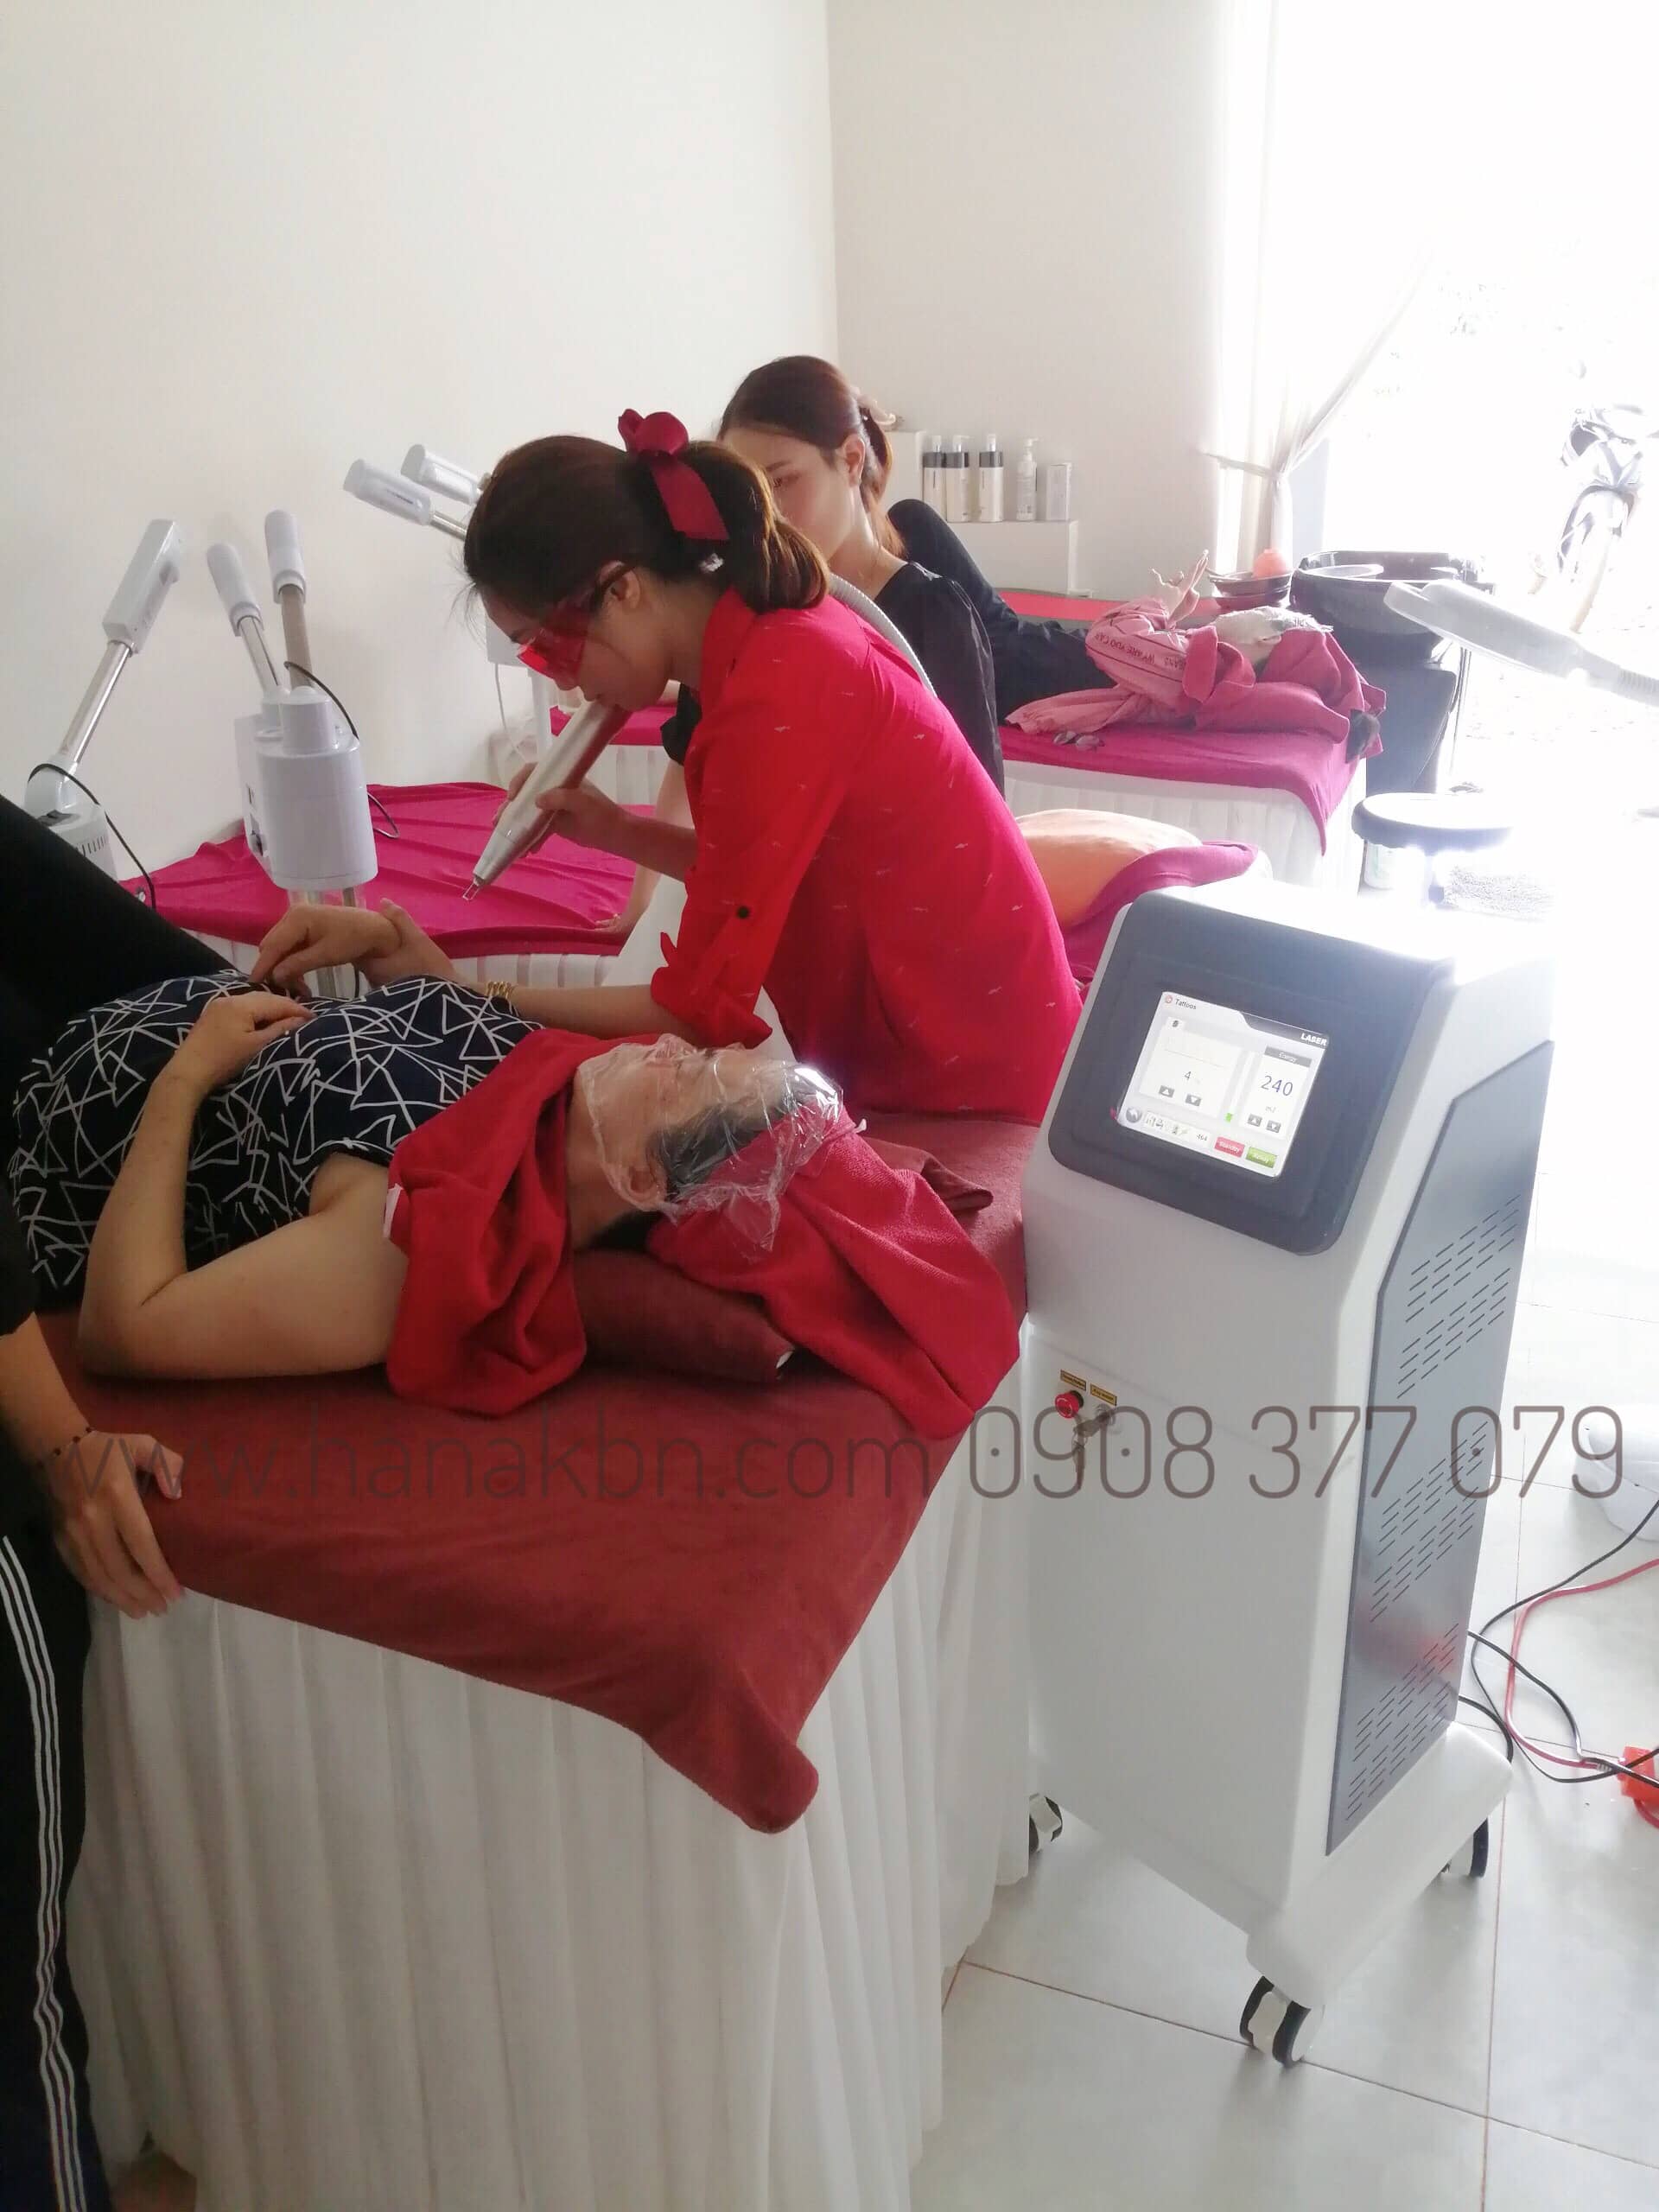 Hình ảnh chủ spa điều trị cho khách hàng bằng công nghệ Laser Yag RG 399 Plus chính hãng được phân phối độc quyền bởi công ty HanaKBN